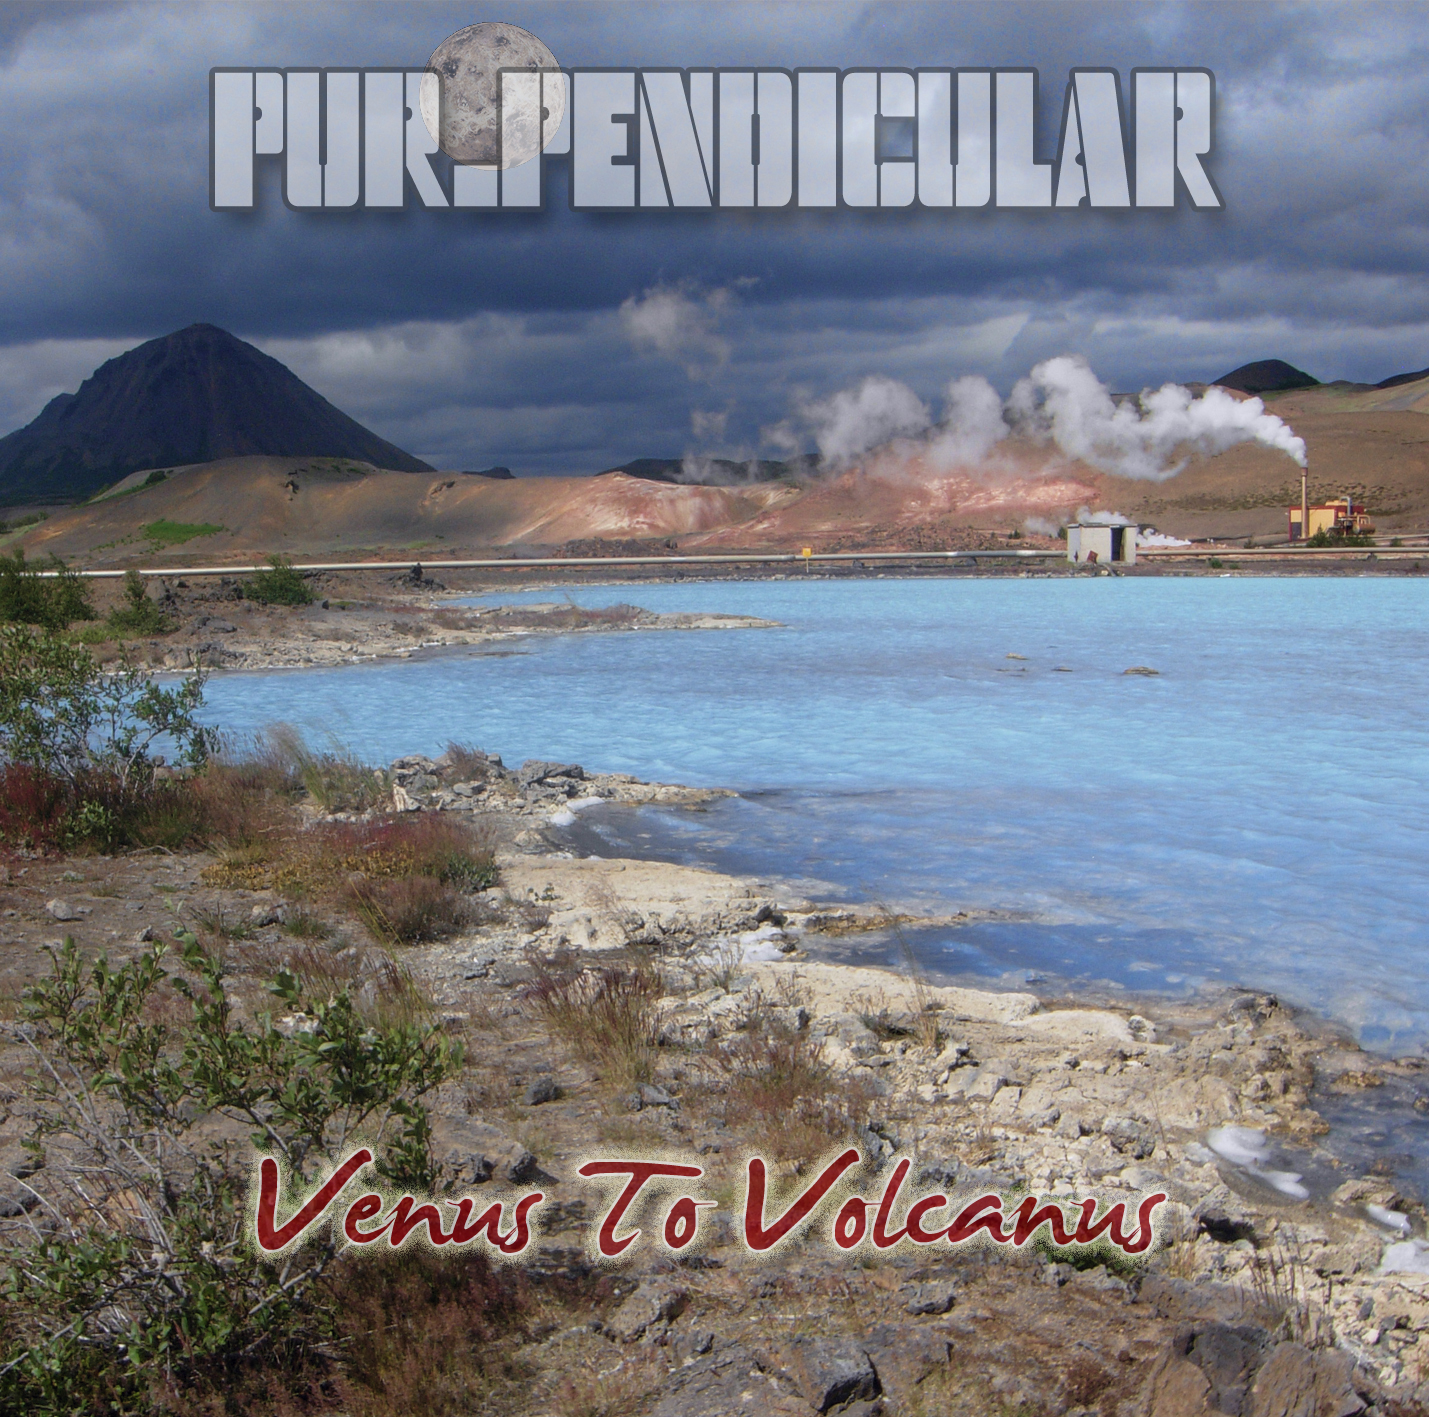 Bildergebnis für purpendicular venus to volcanus